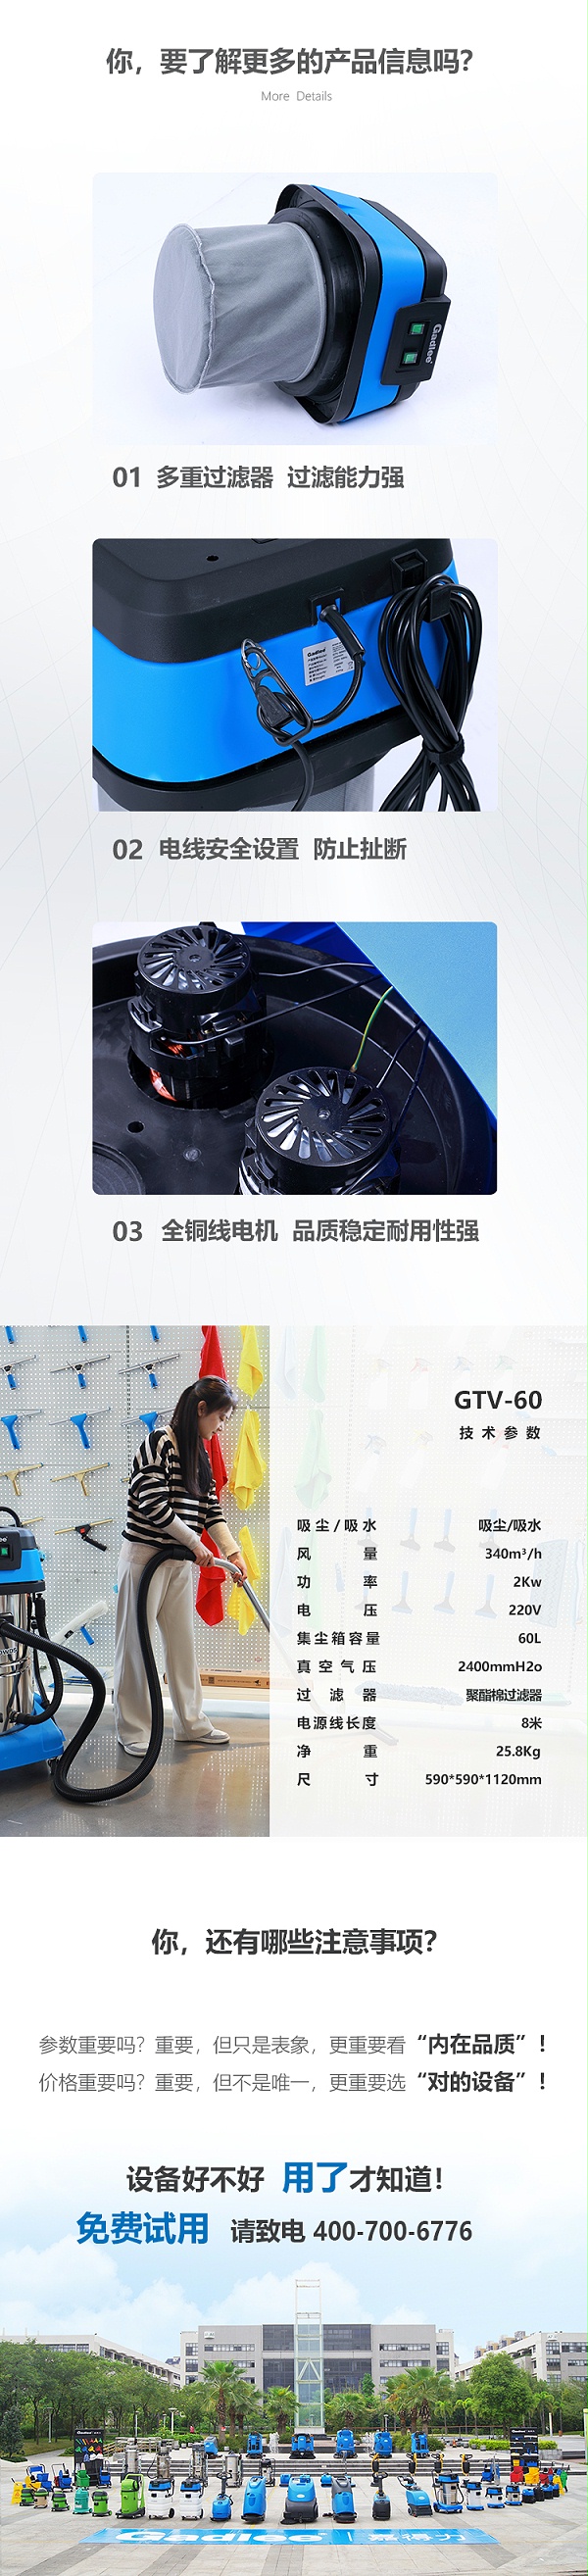 新-GTV60详情页（大字版本）_02